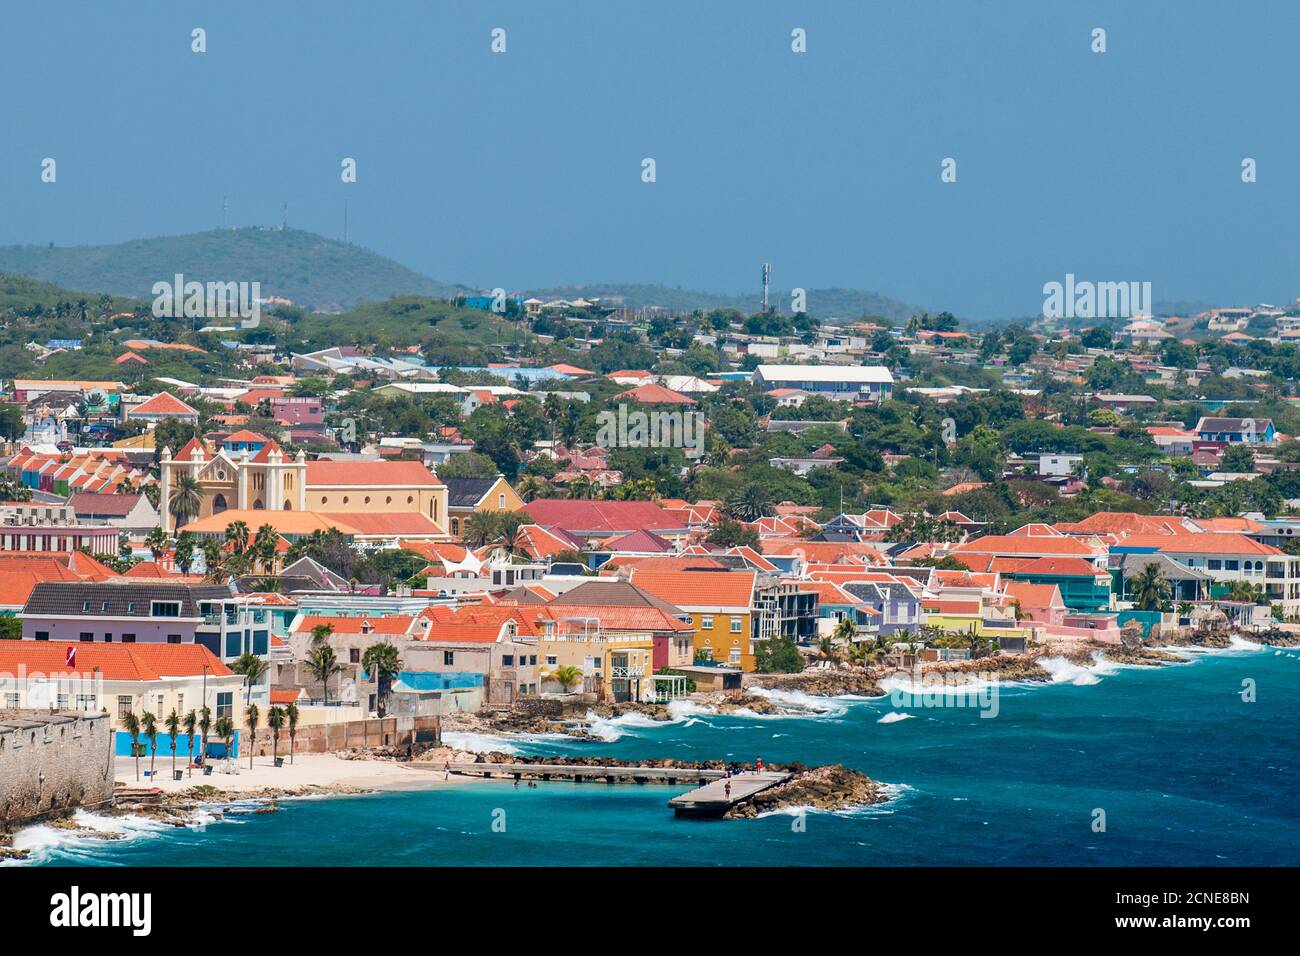 Vue aérienne de la capitale Willemstad, Curaçao, îles ABC, Antilles néerlandaises, Caraïbes, Amérique centrale Banque D'Images